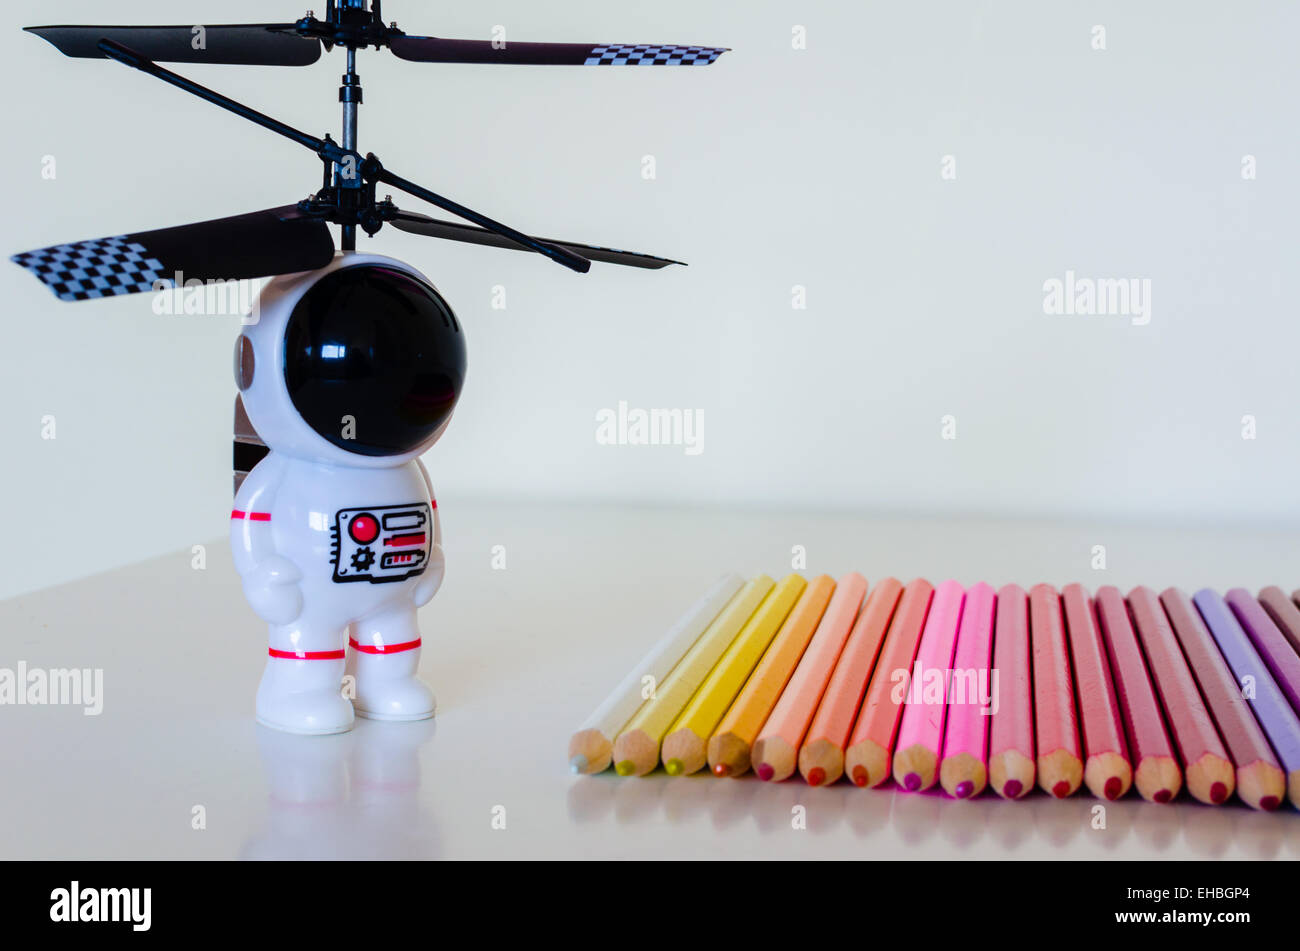 Un jouet pour enfant spaceman regarde vers un ensemble de crayons à colorier portées dans une ligne sur une surface blanche. Il y a certains détail reflète. Banque D'Images